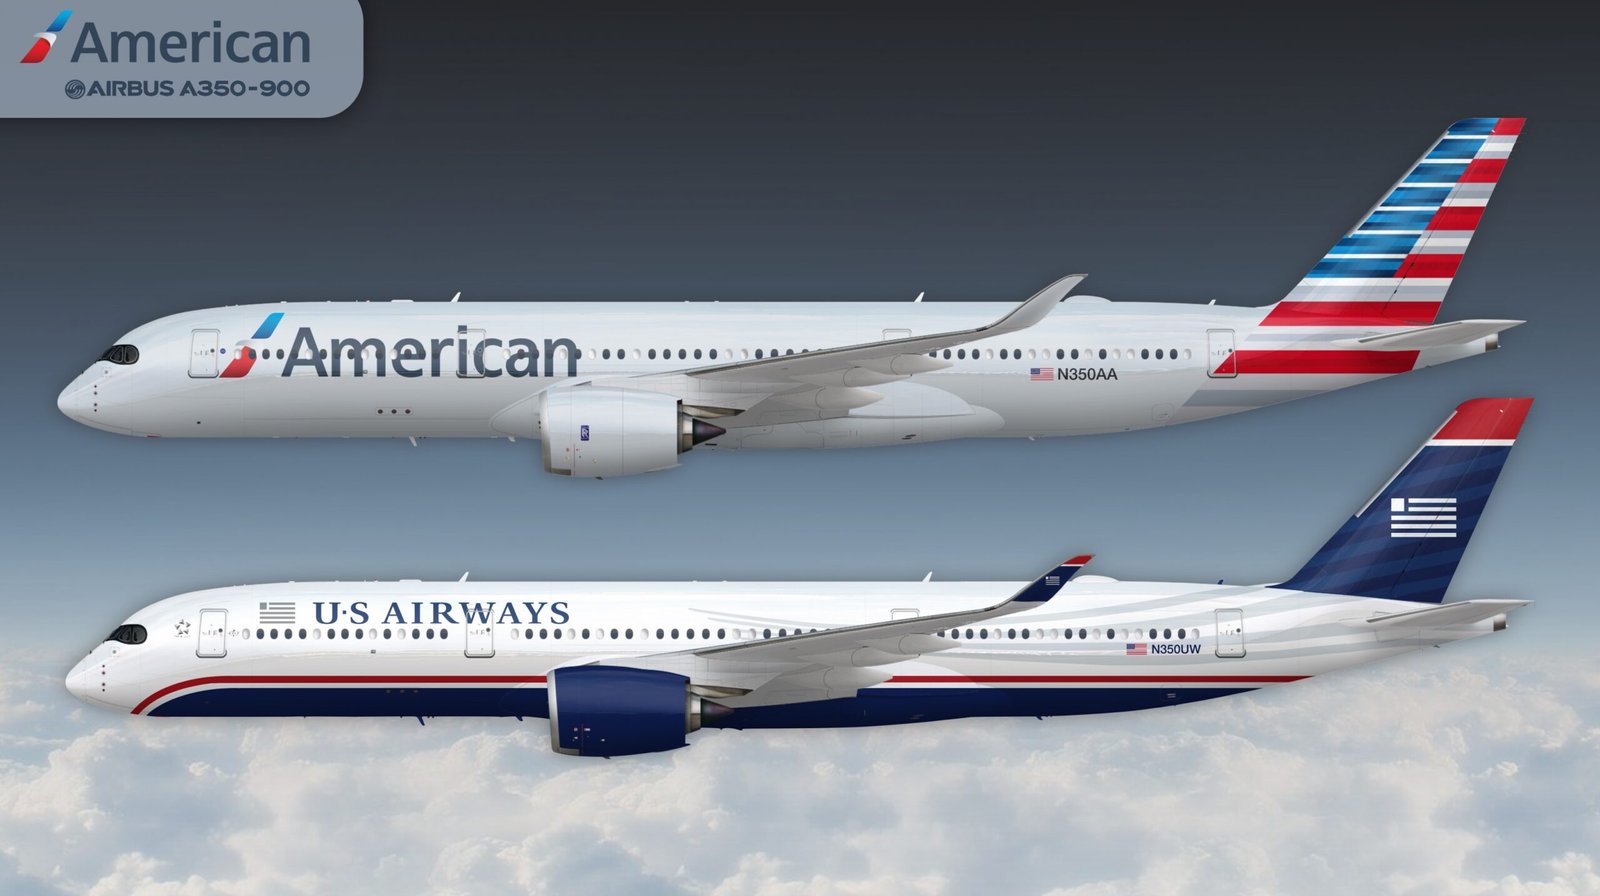 Render del Airbus A350 con las libreas de American Airlines (nueva) y US Airways. Autor: Brentmne